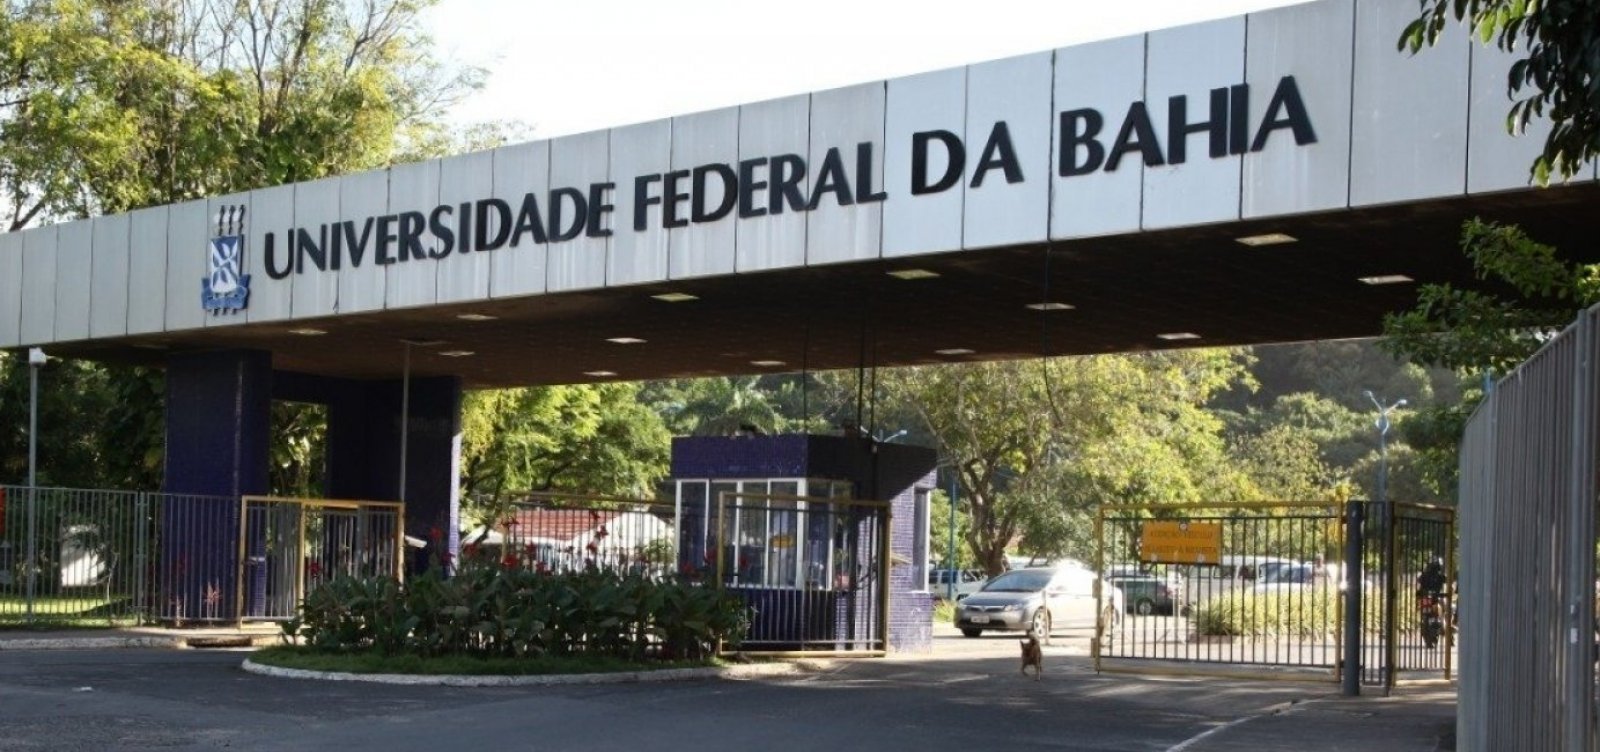 Apenas duas universidades da Bahia têm nota máxima em avaliação de qualidade do MEC; confira ranking do estado